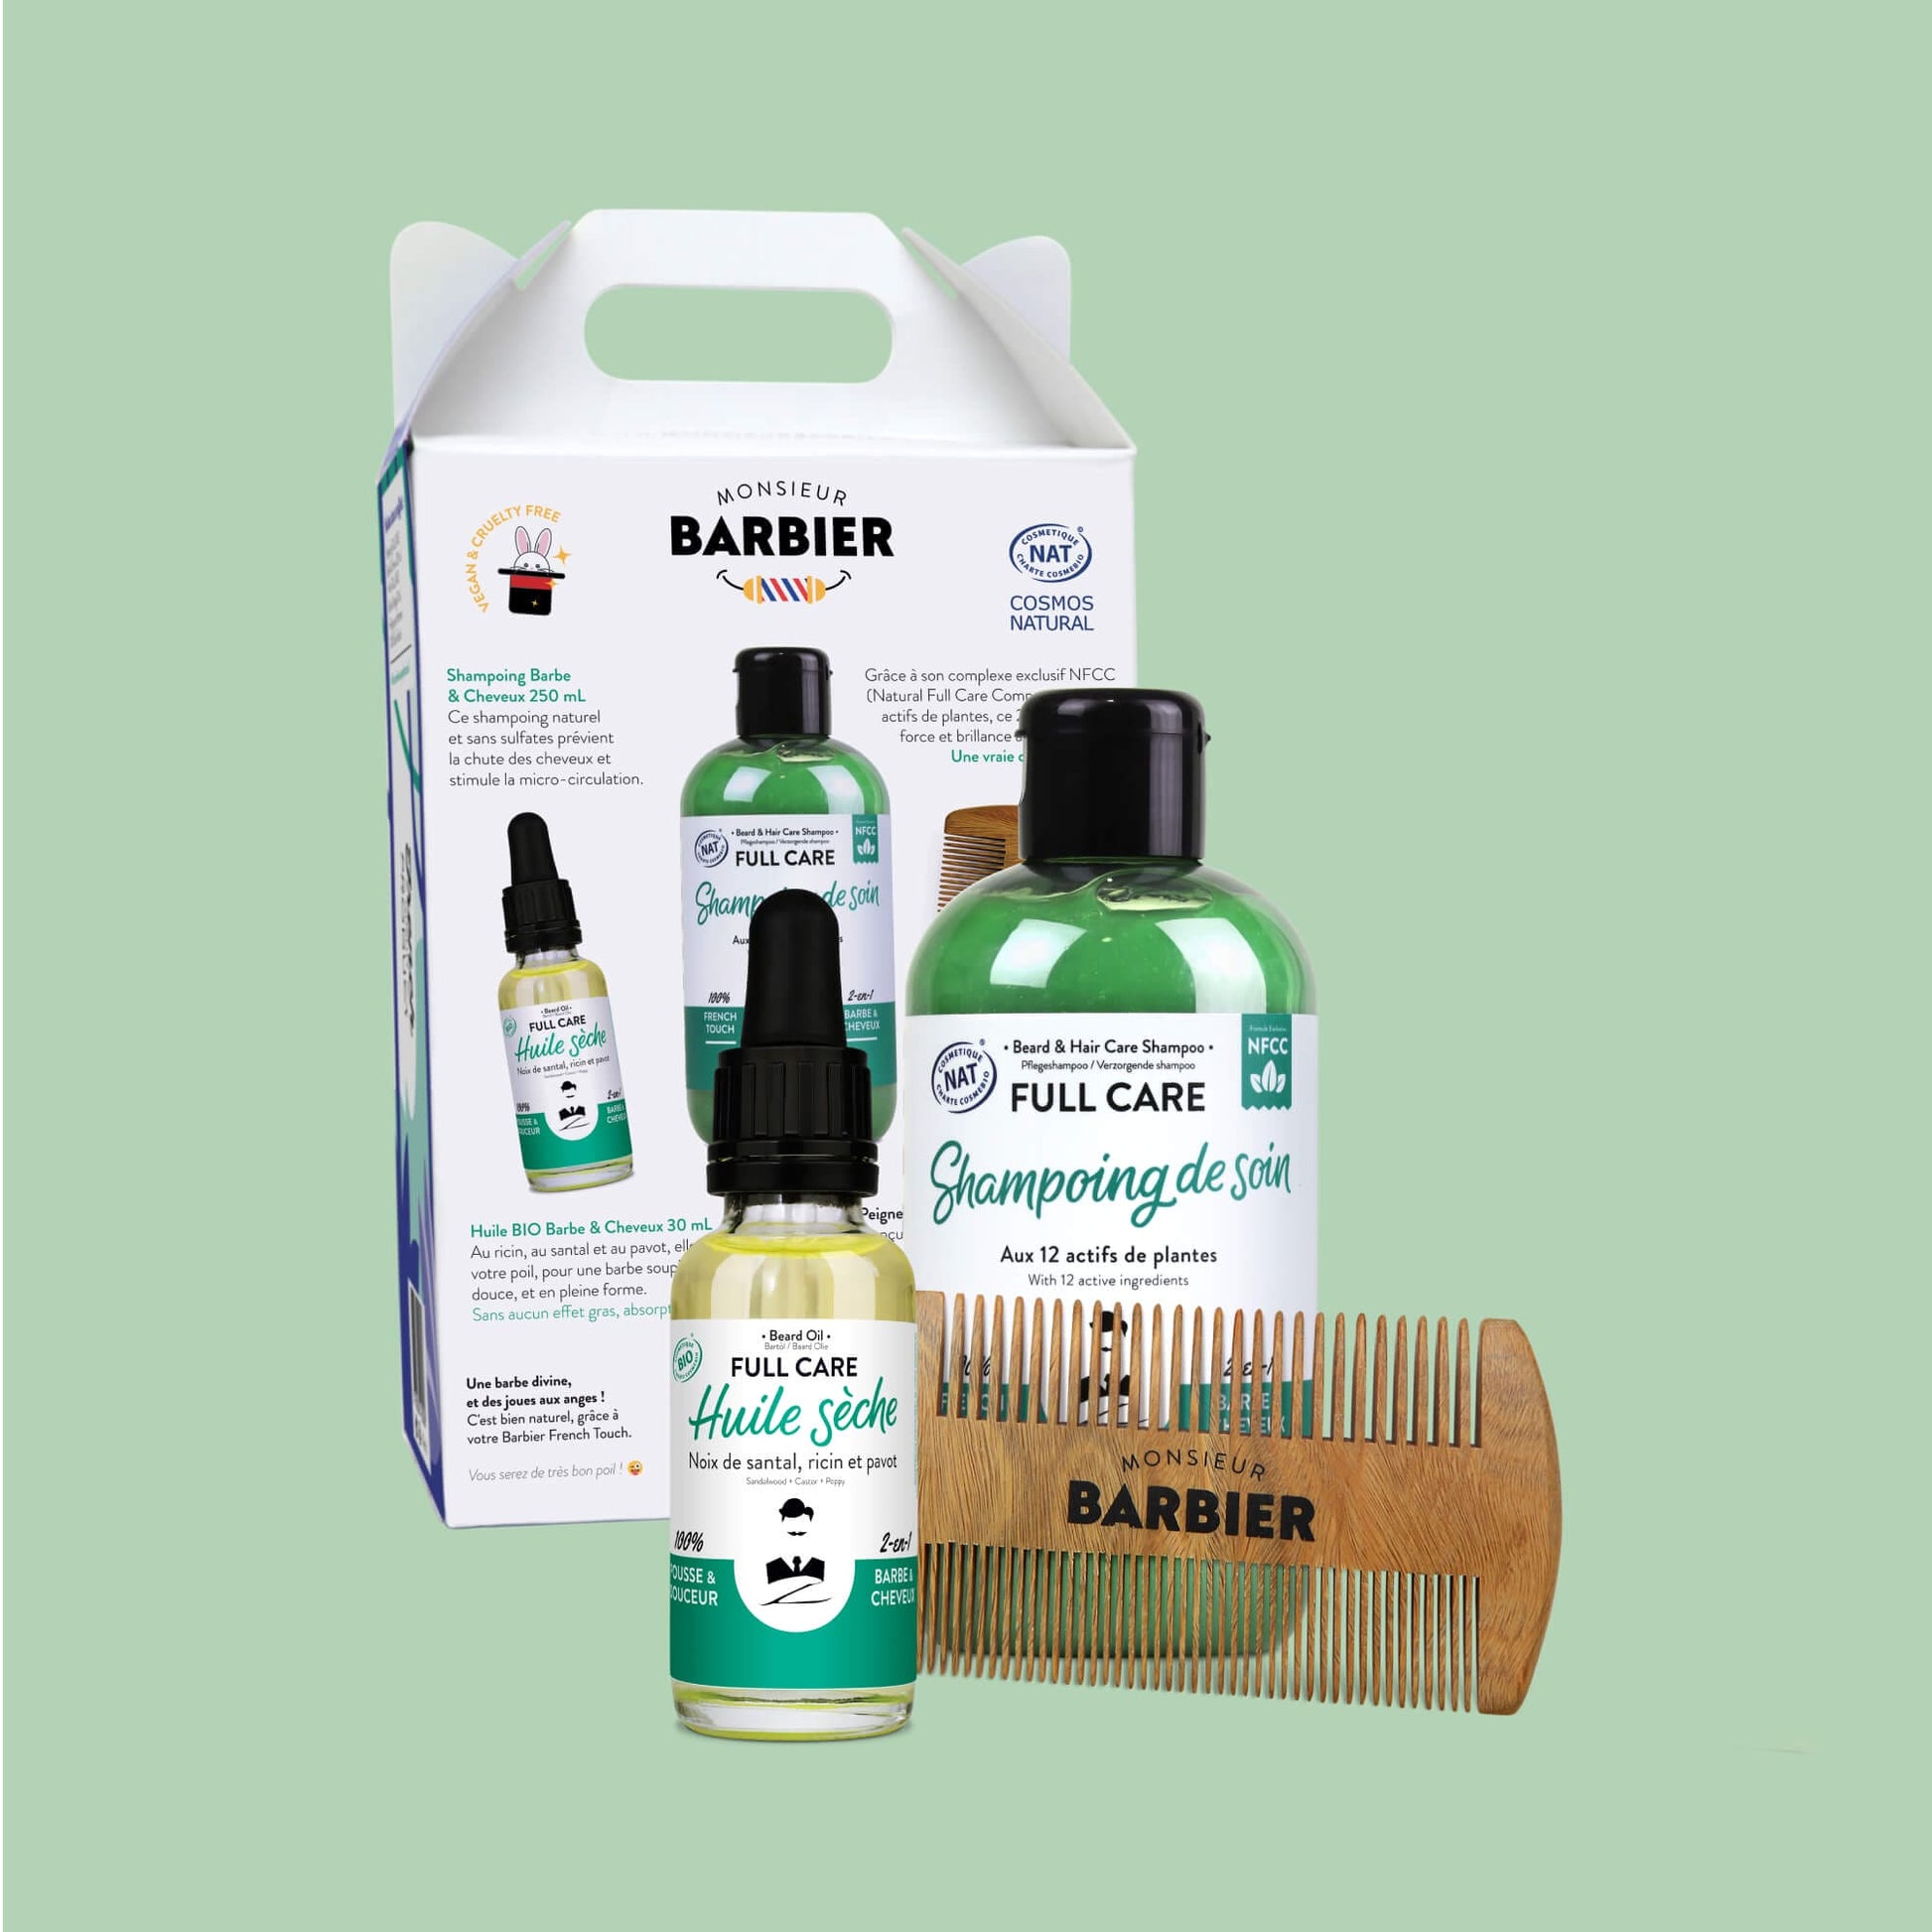 Dos de l'emballage du coffret de soins pour homme Monsieur BARBIER, détaillant les bienfaits et instructions d'utilisation des produits pour la barbe et les cheveux, sur fond vert.